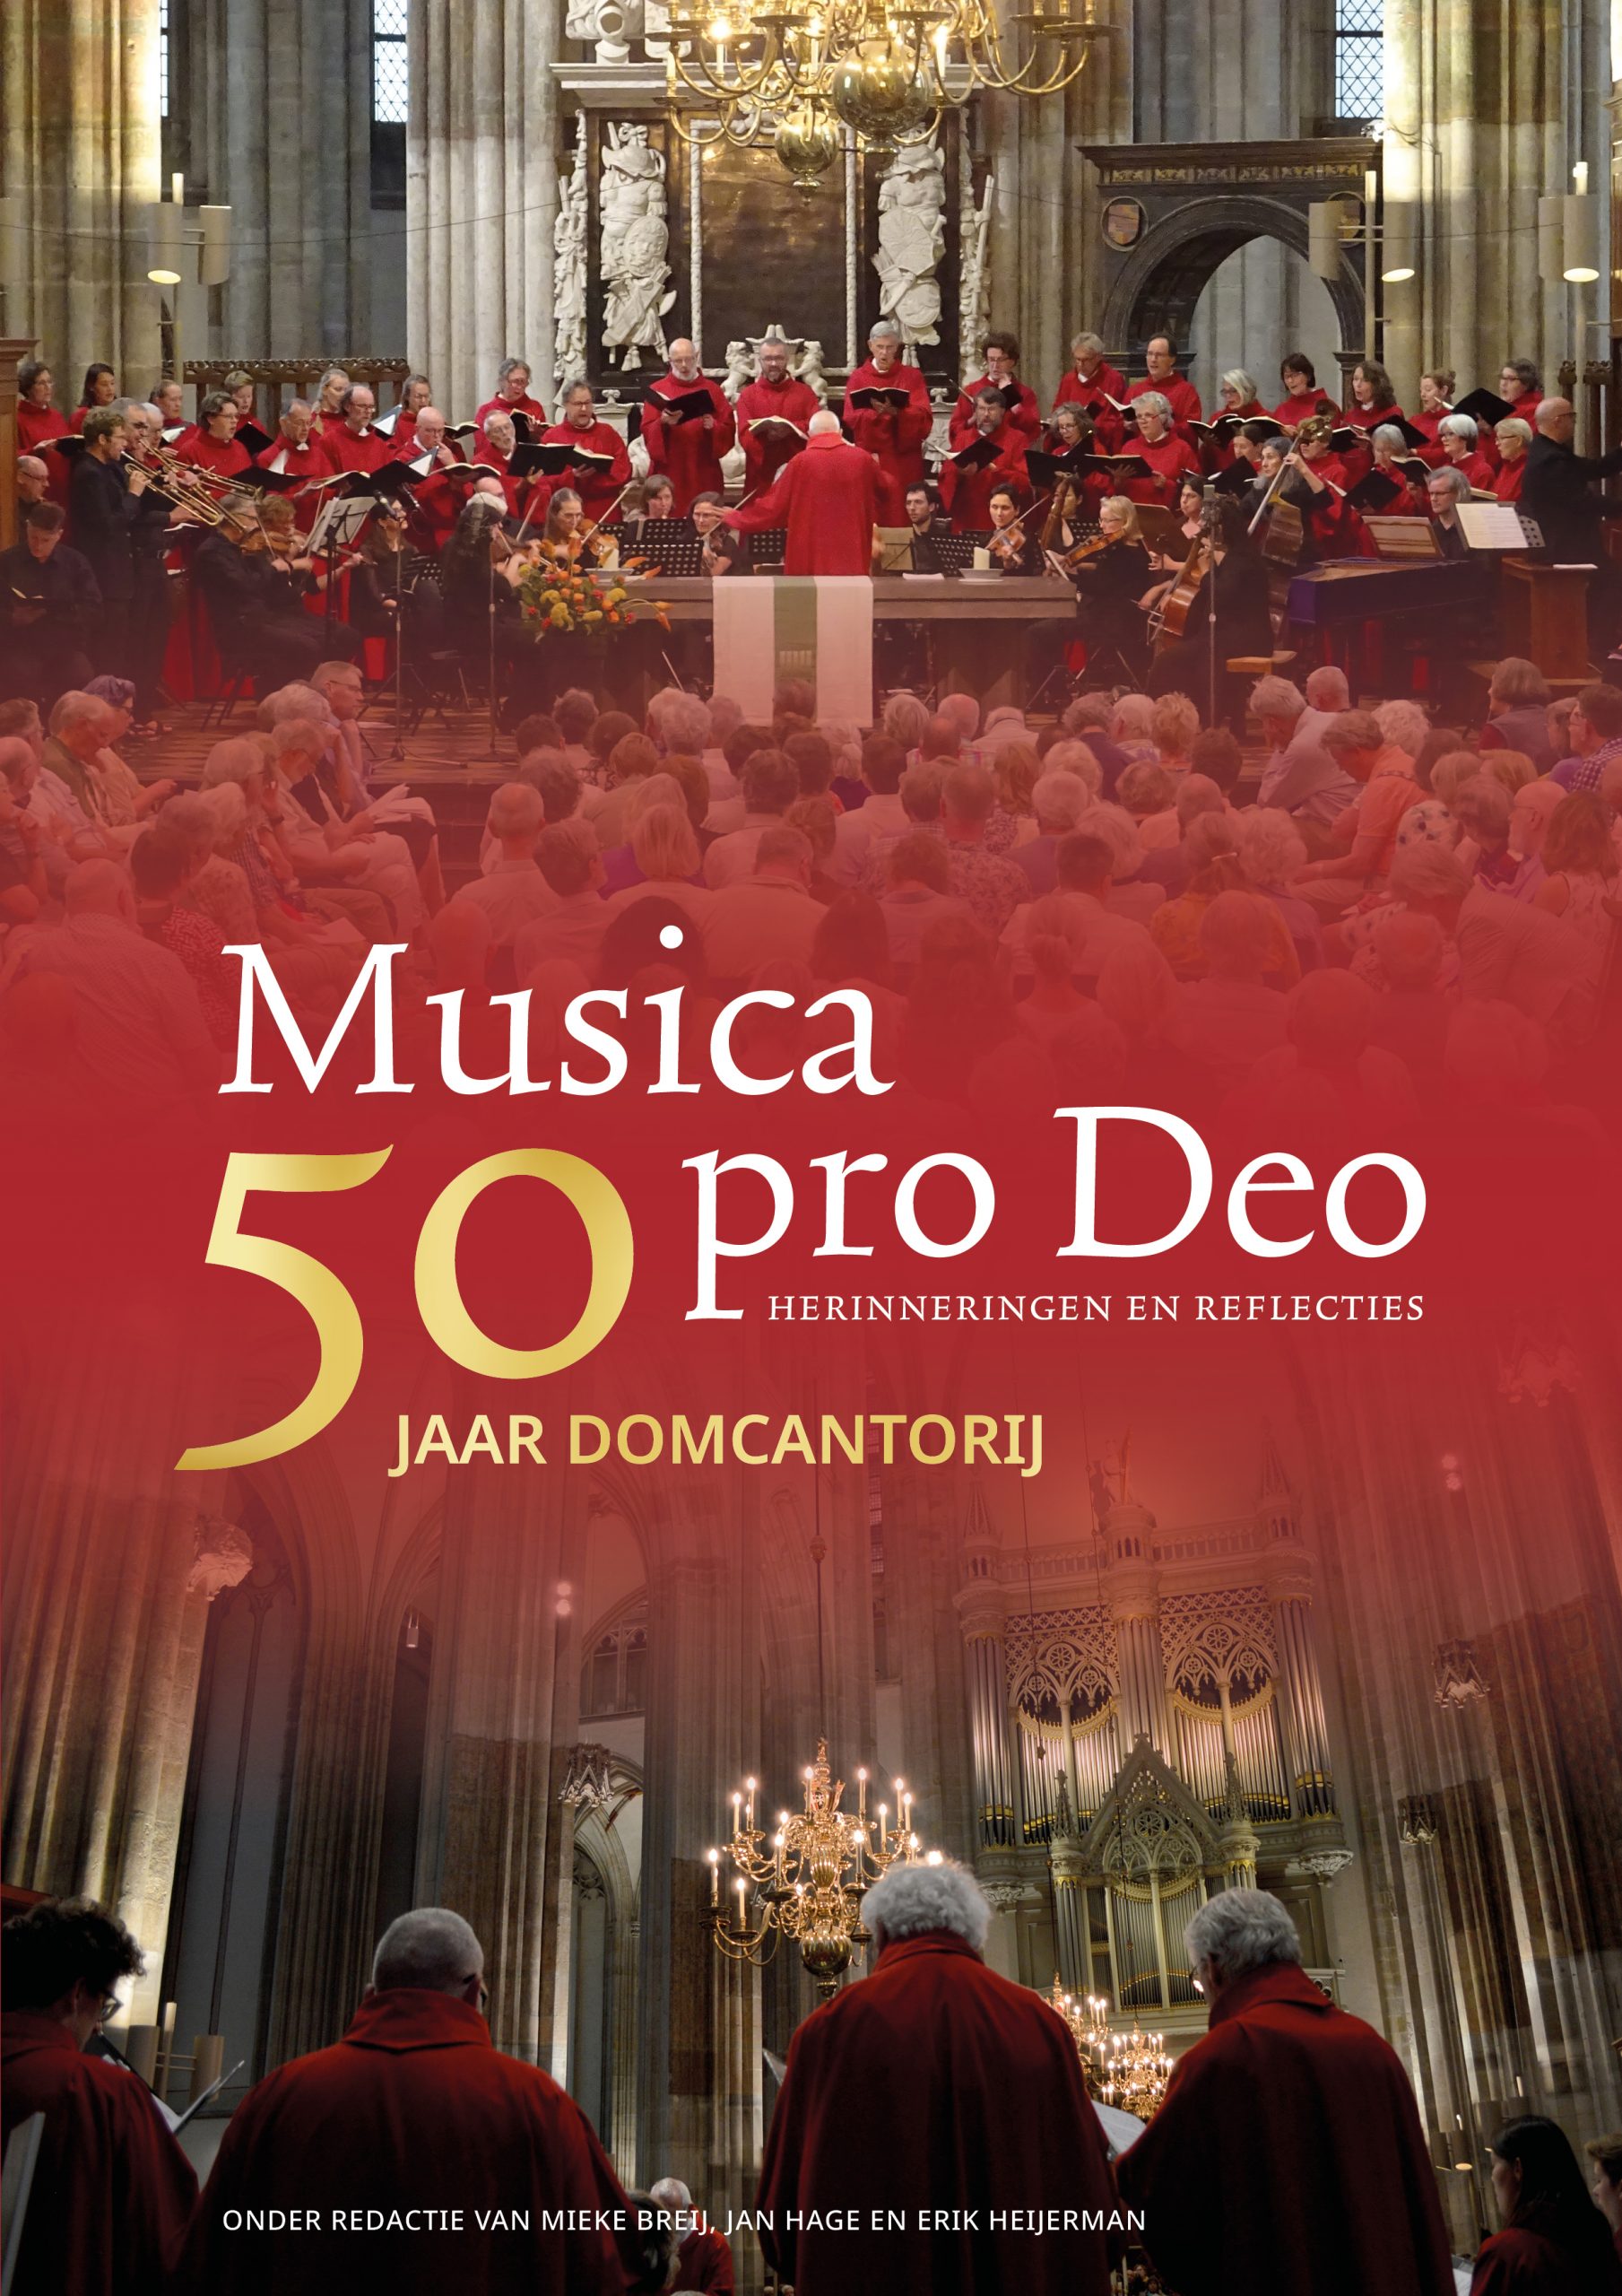 Musica pro Deo 50 jaar Domcantorij scaled